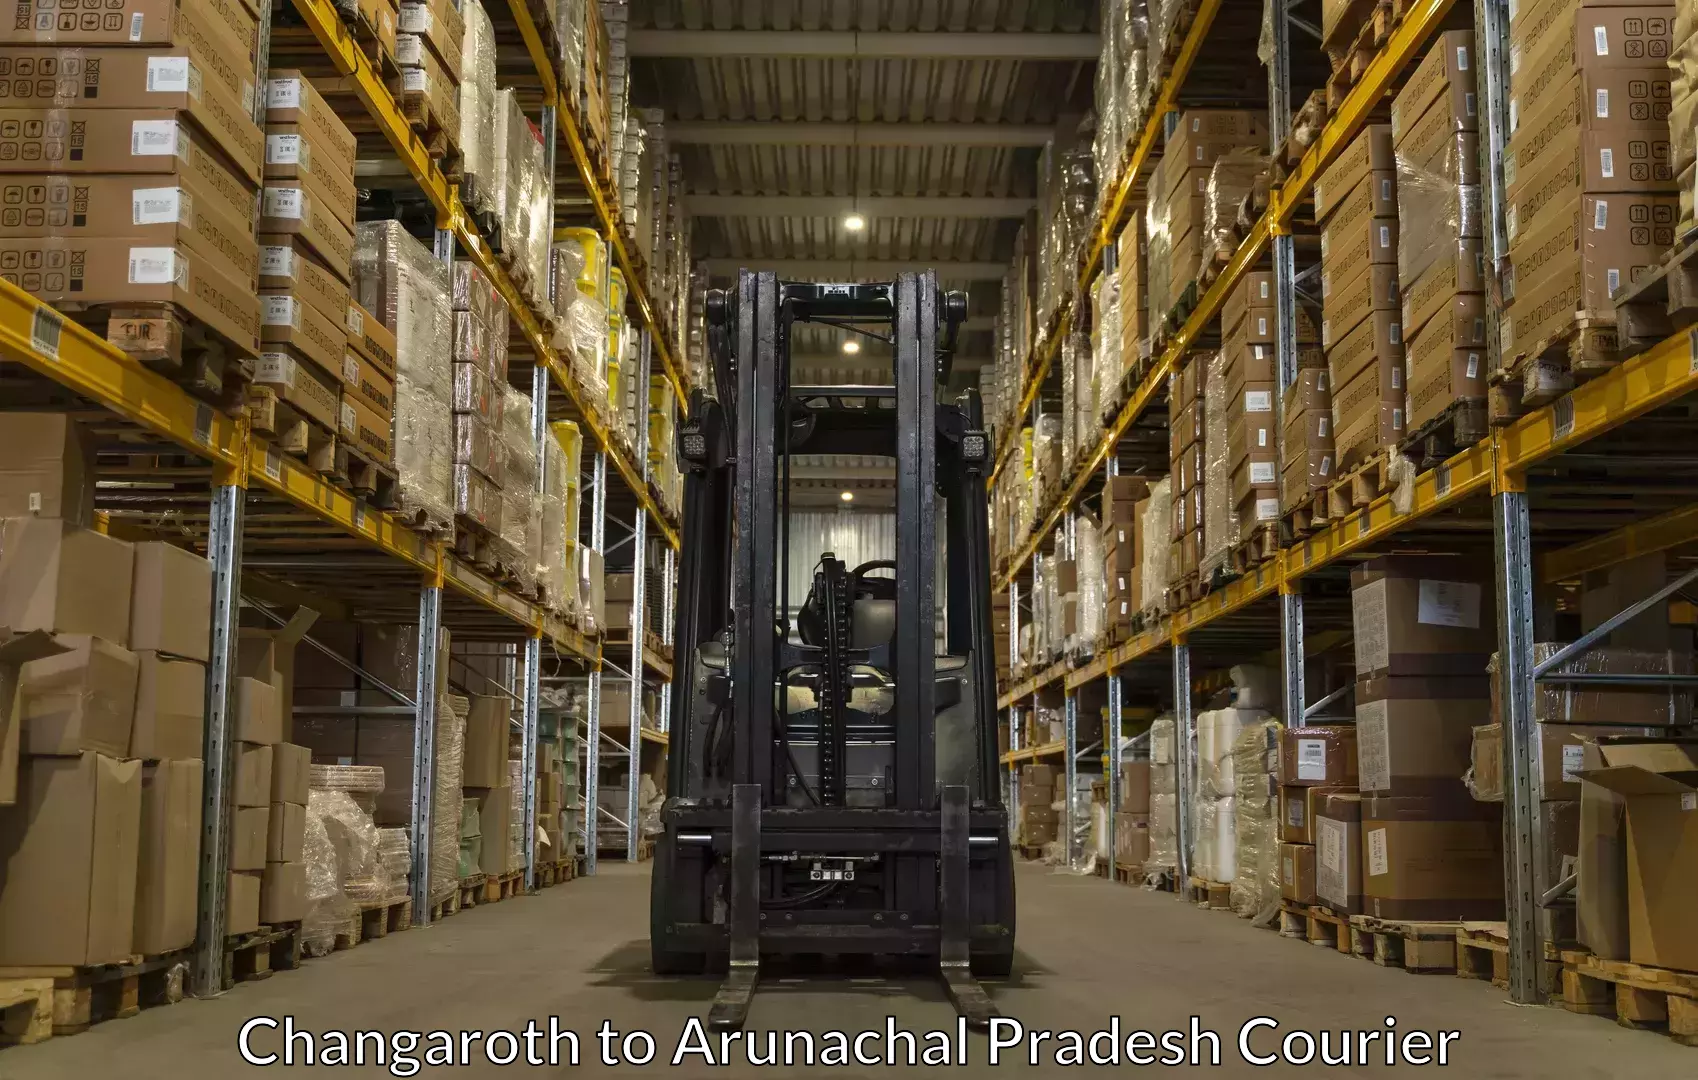 Furniture moving experts Changaroth to Arunachal Pradesh